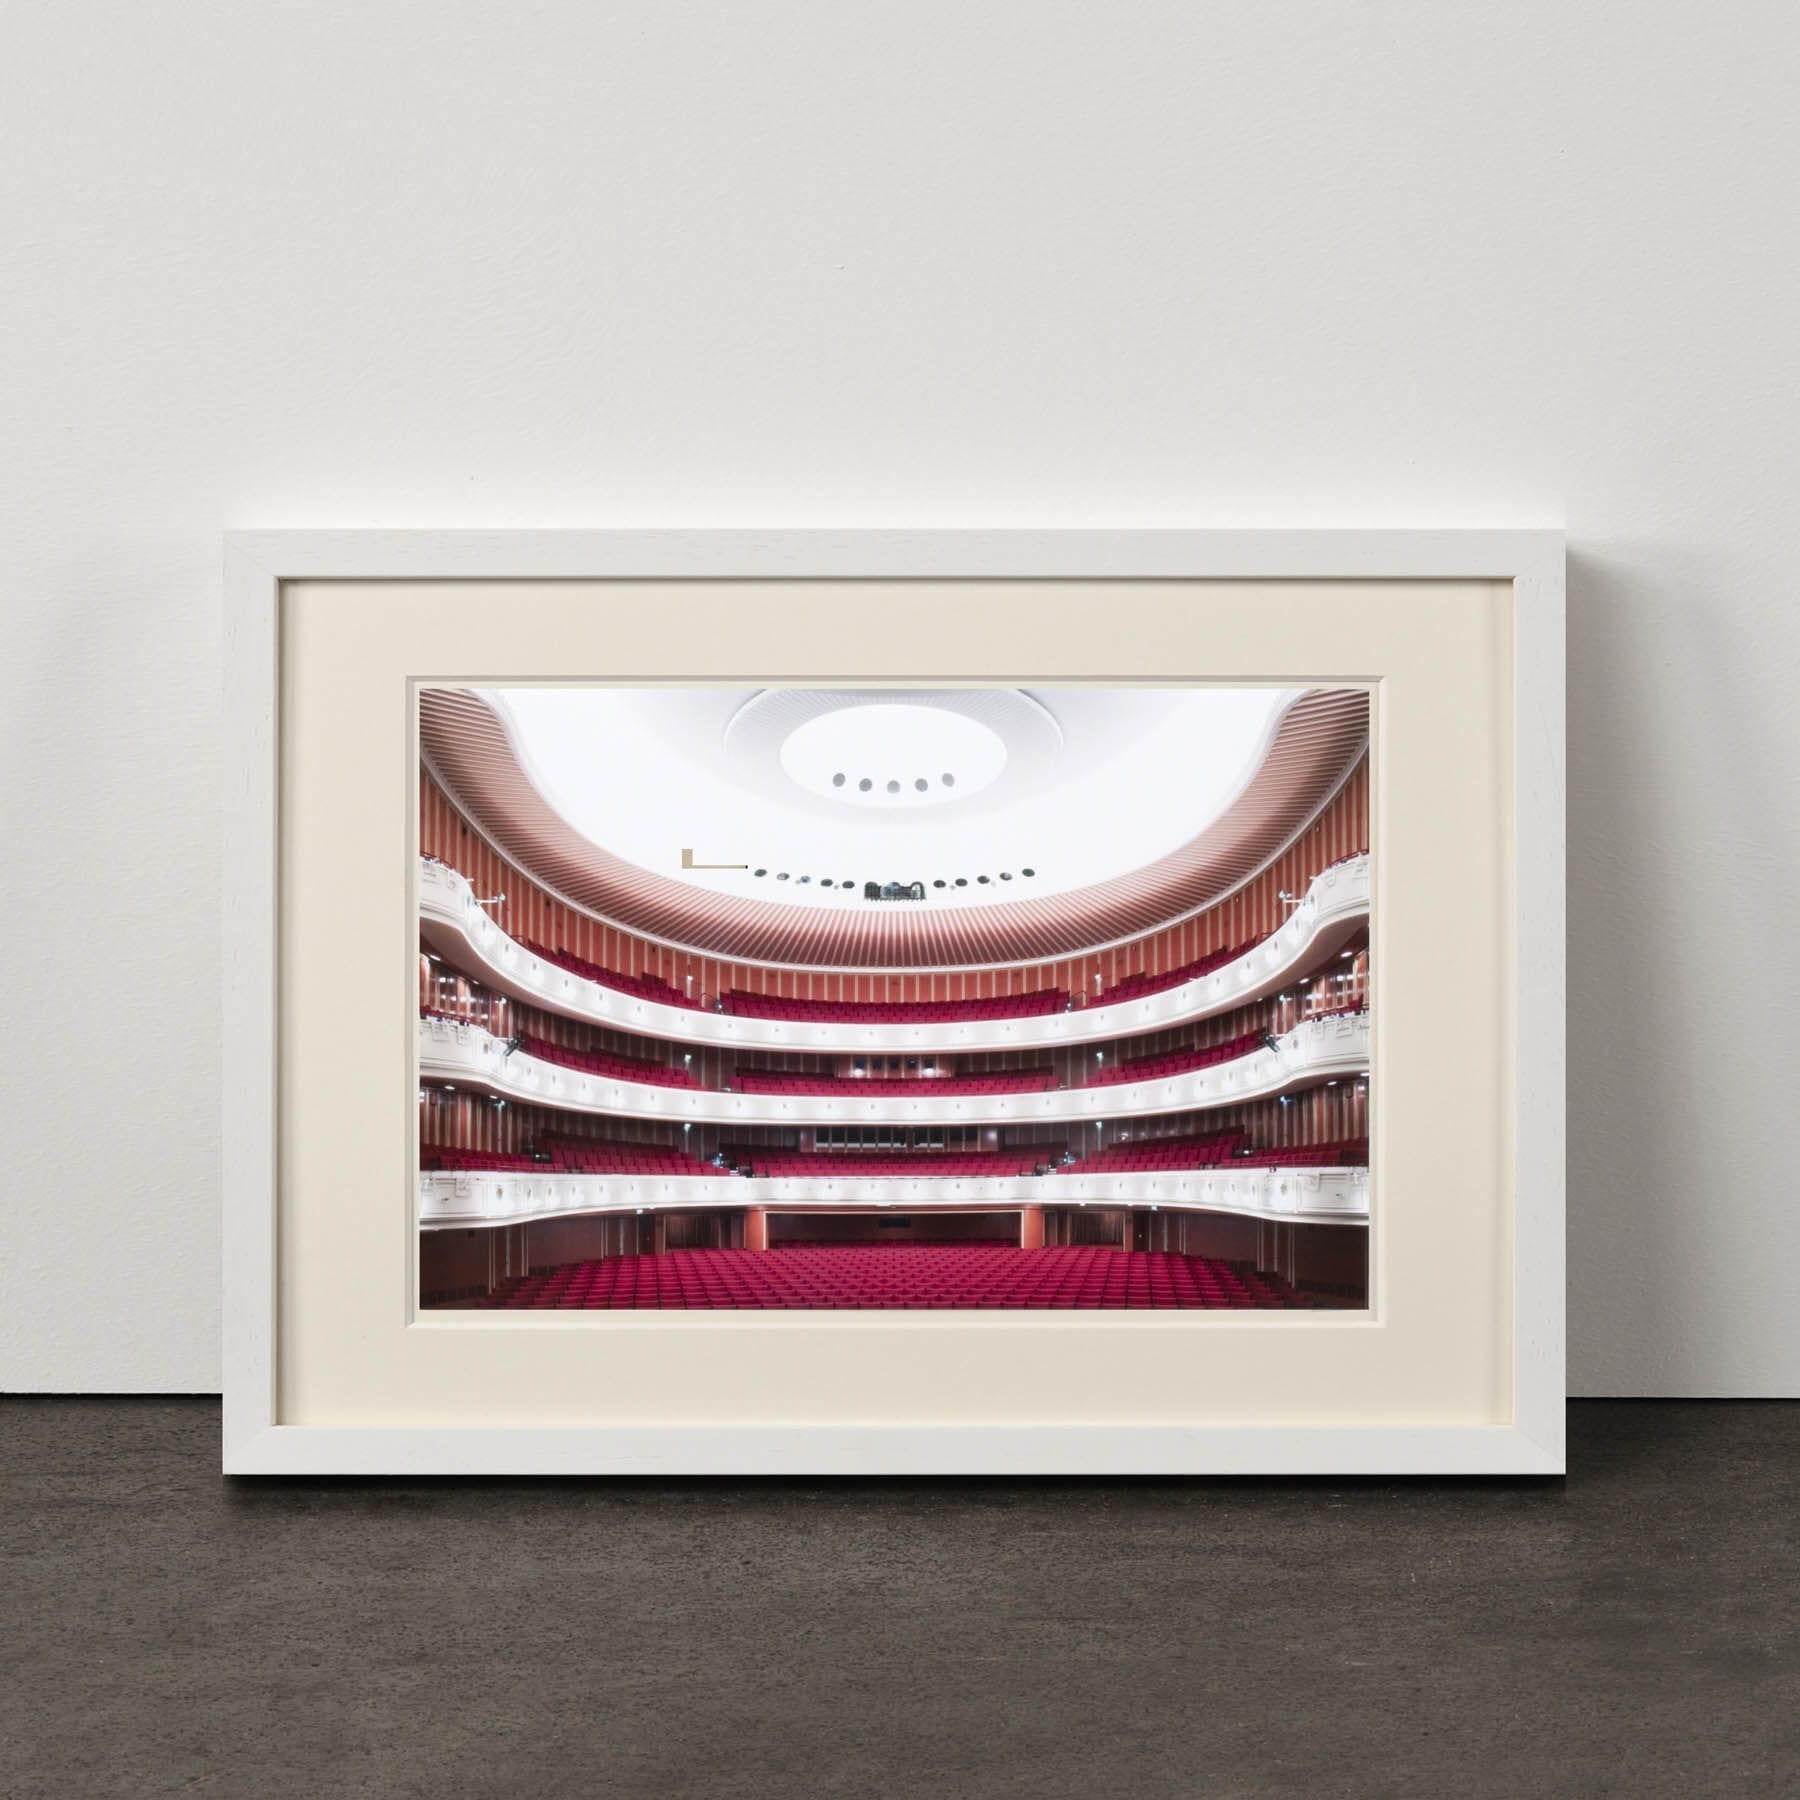 Deutsche Oper am Rhein, 2012/2015 Enlarged